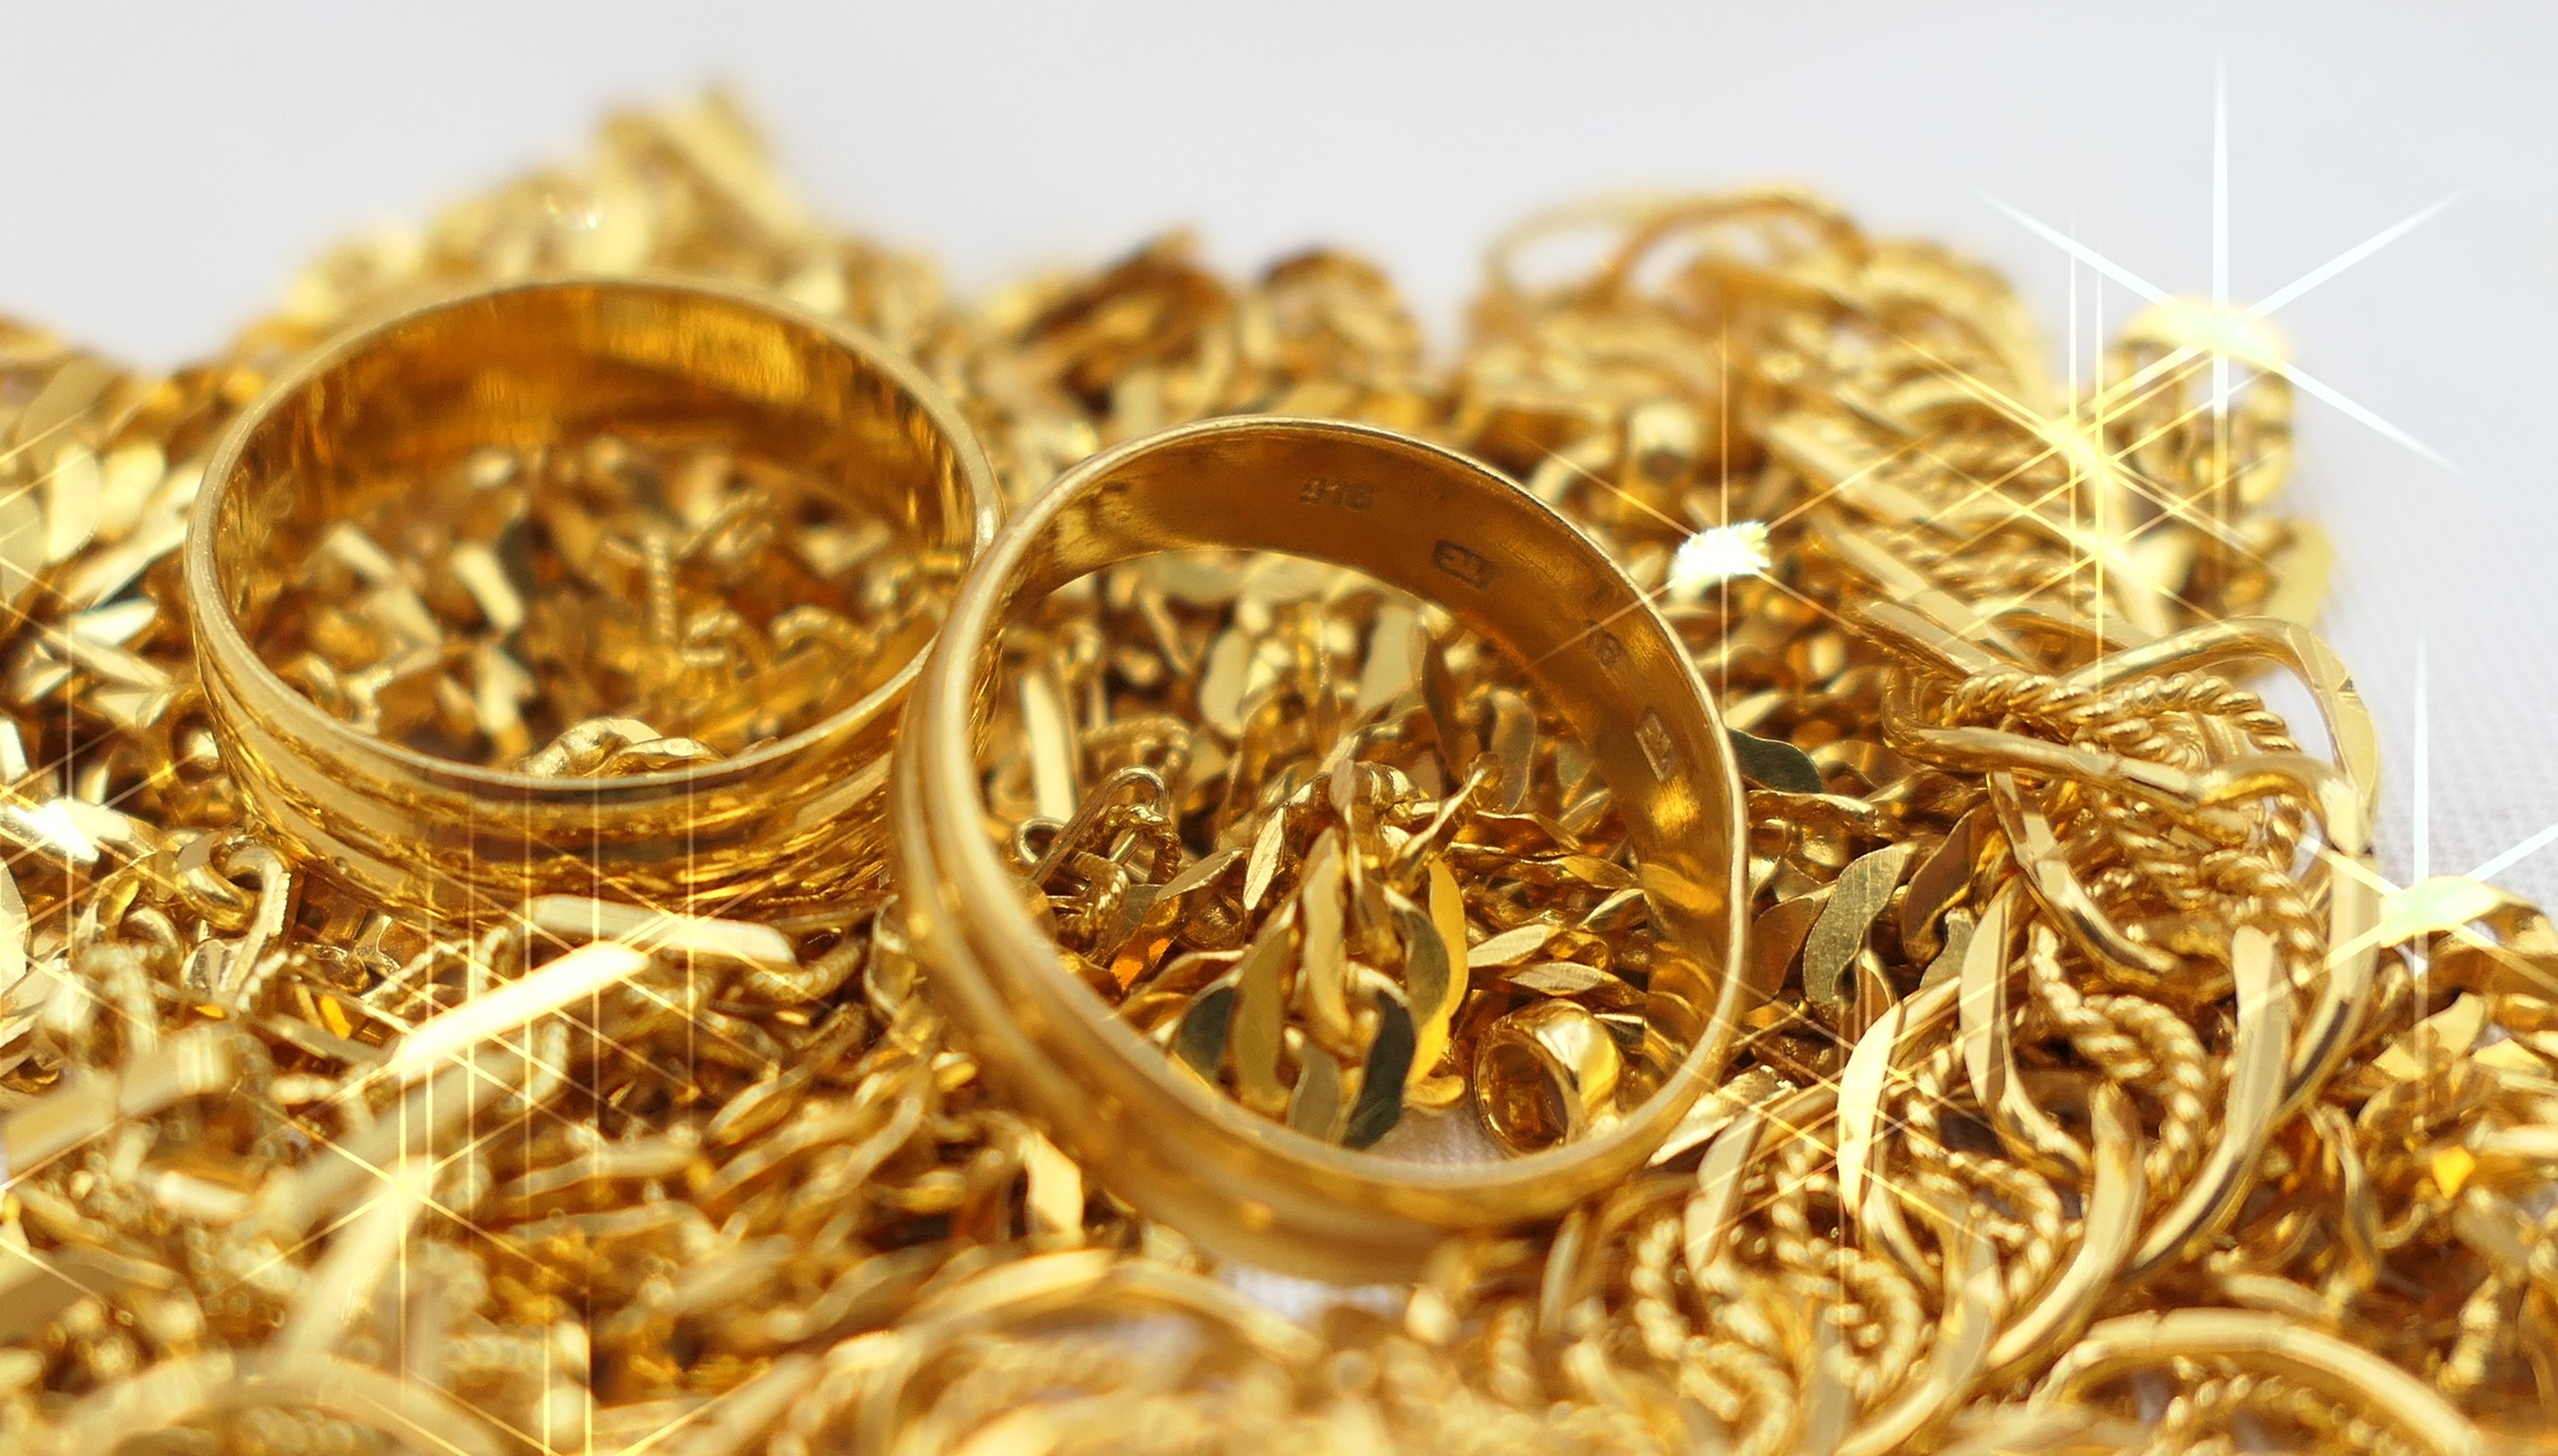     Un exceptionnel vol de bijoux d’une valeur de plus de 150 000€ a eu lieu à Jarry

